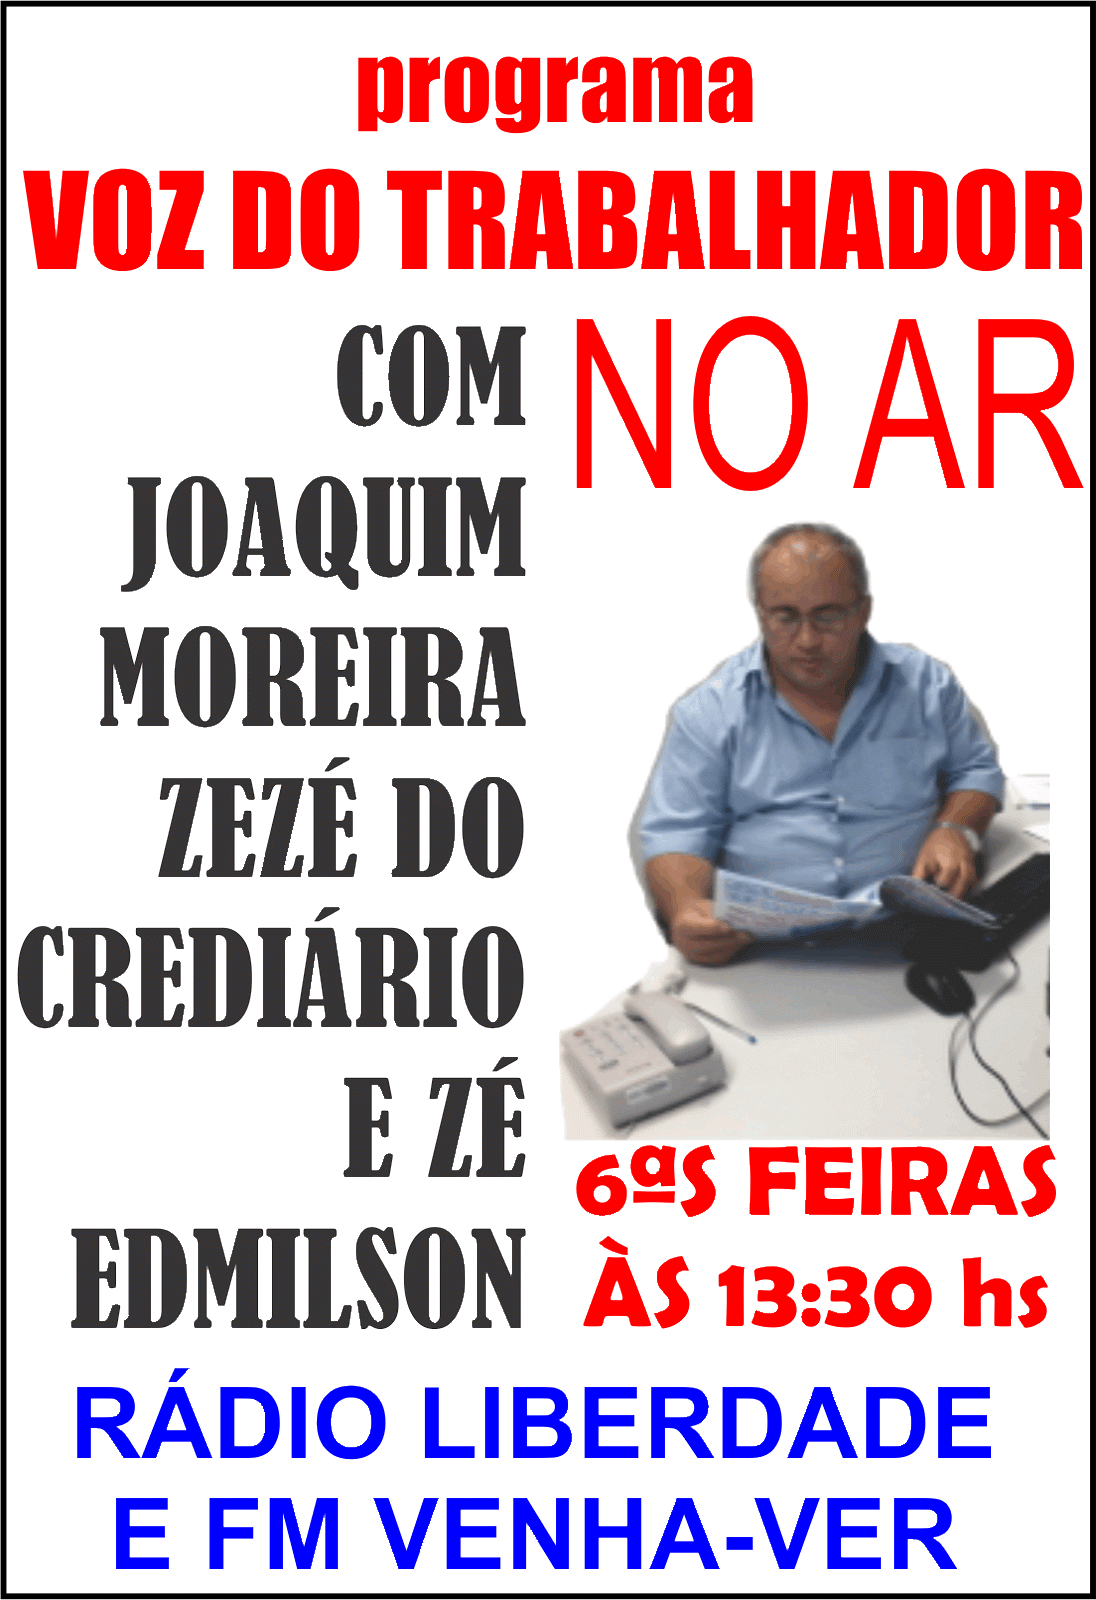 JOAQUIM MOREIRA, RADIALISTA